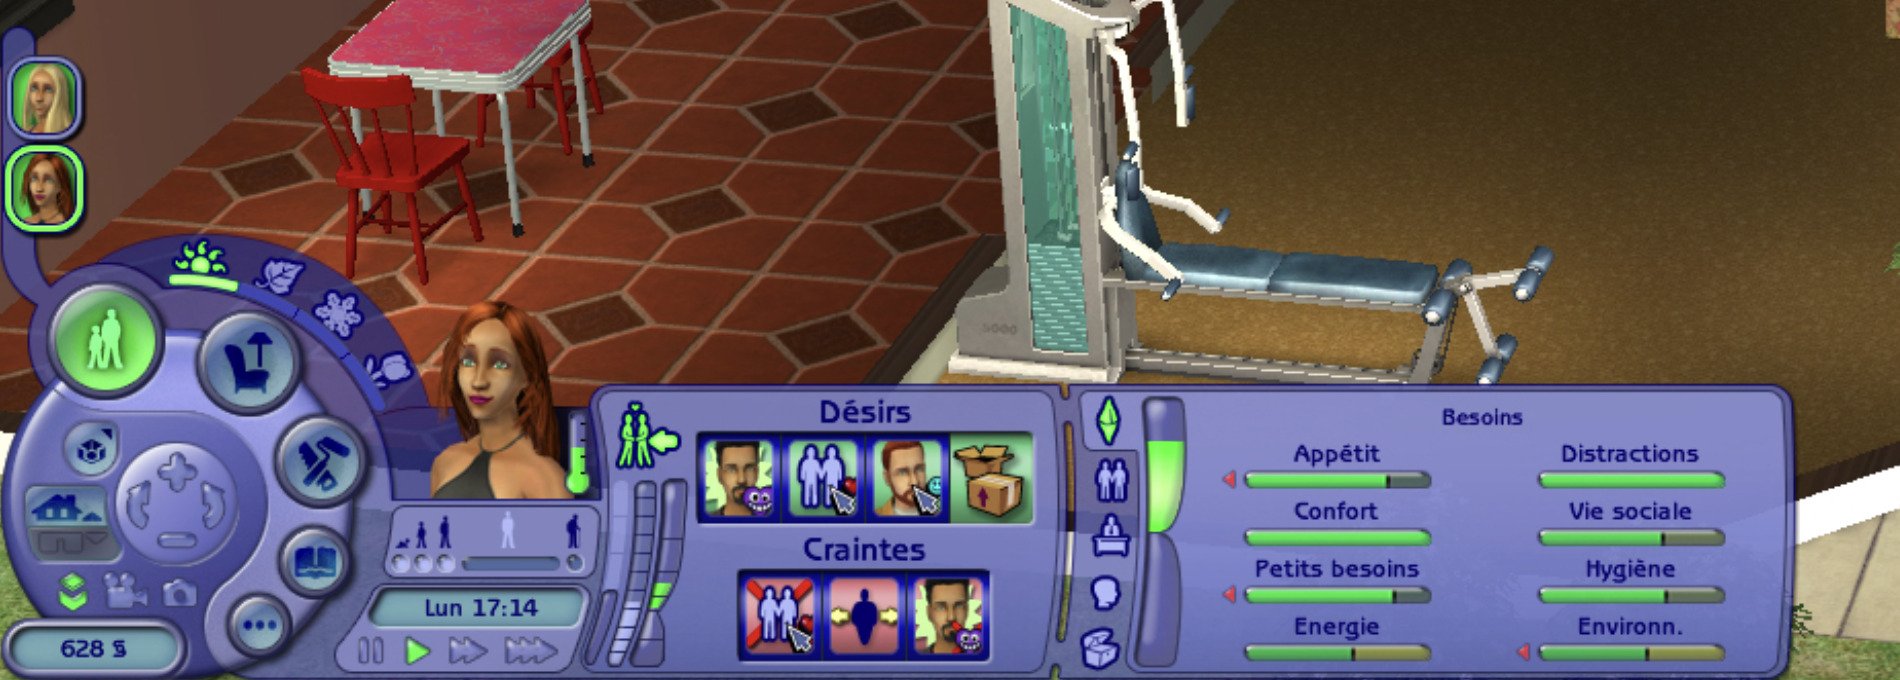 Interface du jeu Les Sims, personnages et menus.